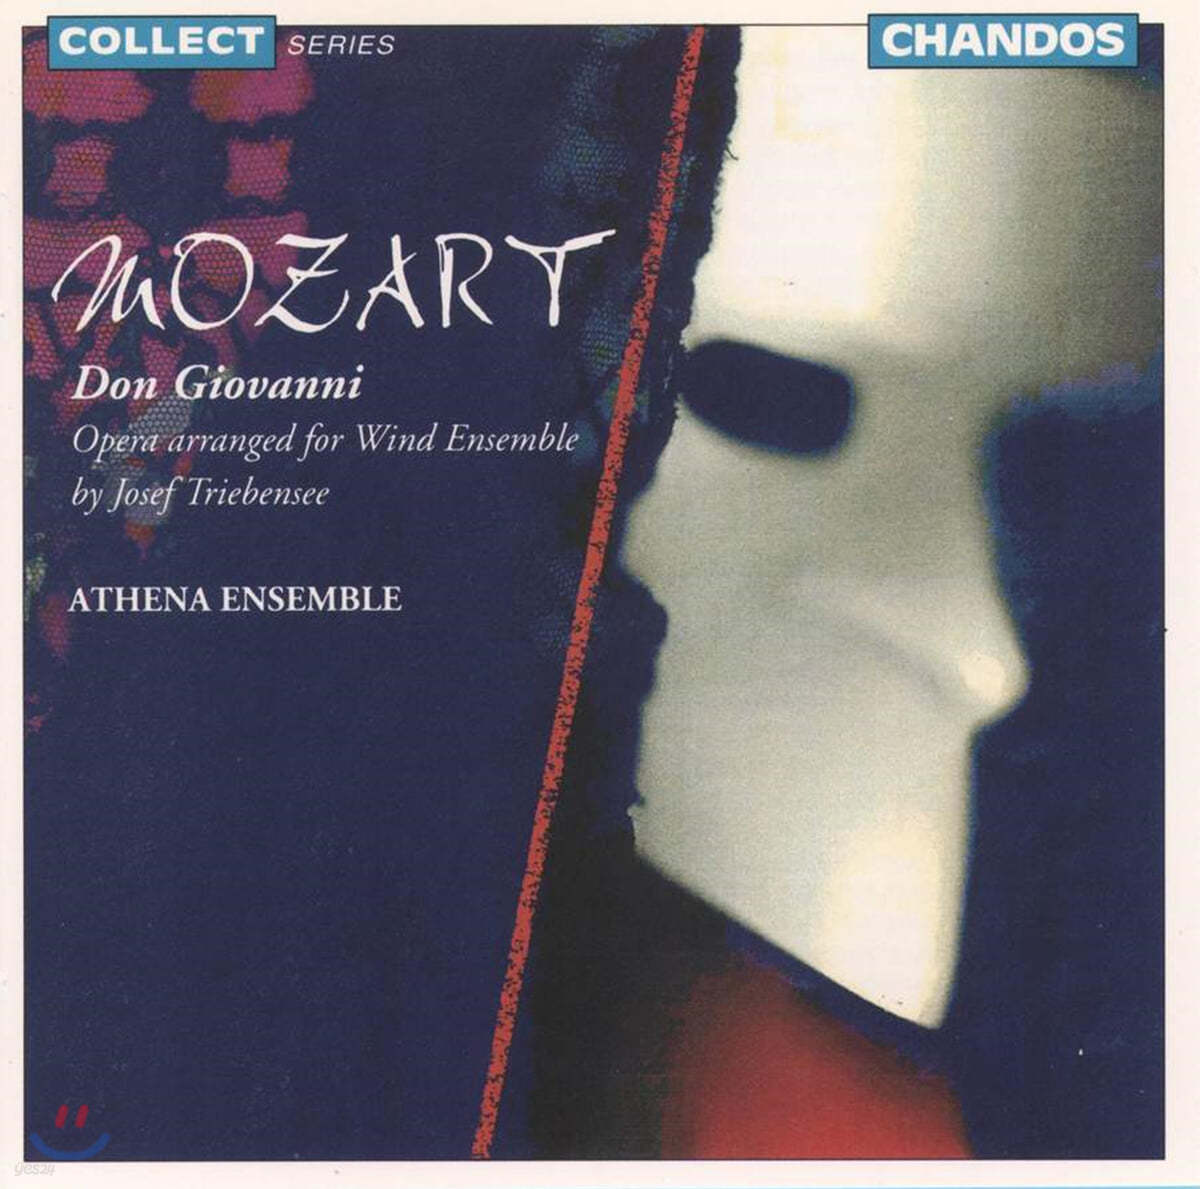 Athena Ensemble 모차르트: 관악 앙상블로 편곡한 돈 지오반니 (Mozart: Don Giovanni Arranged for Wind Ensemble)